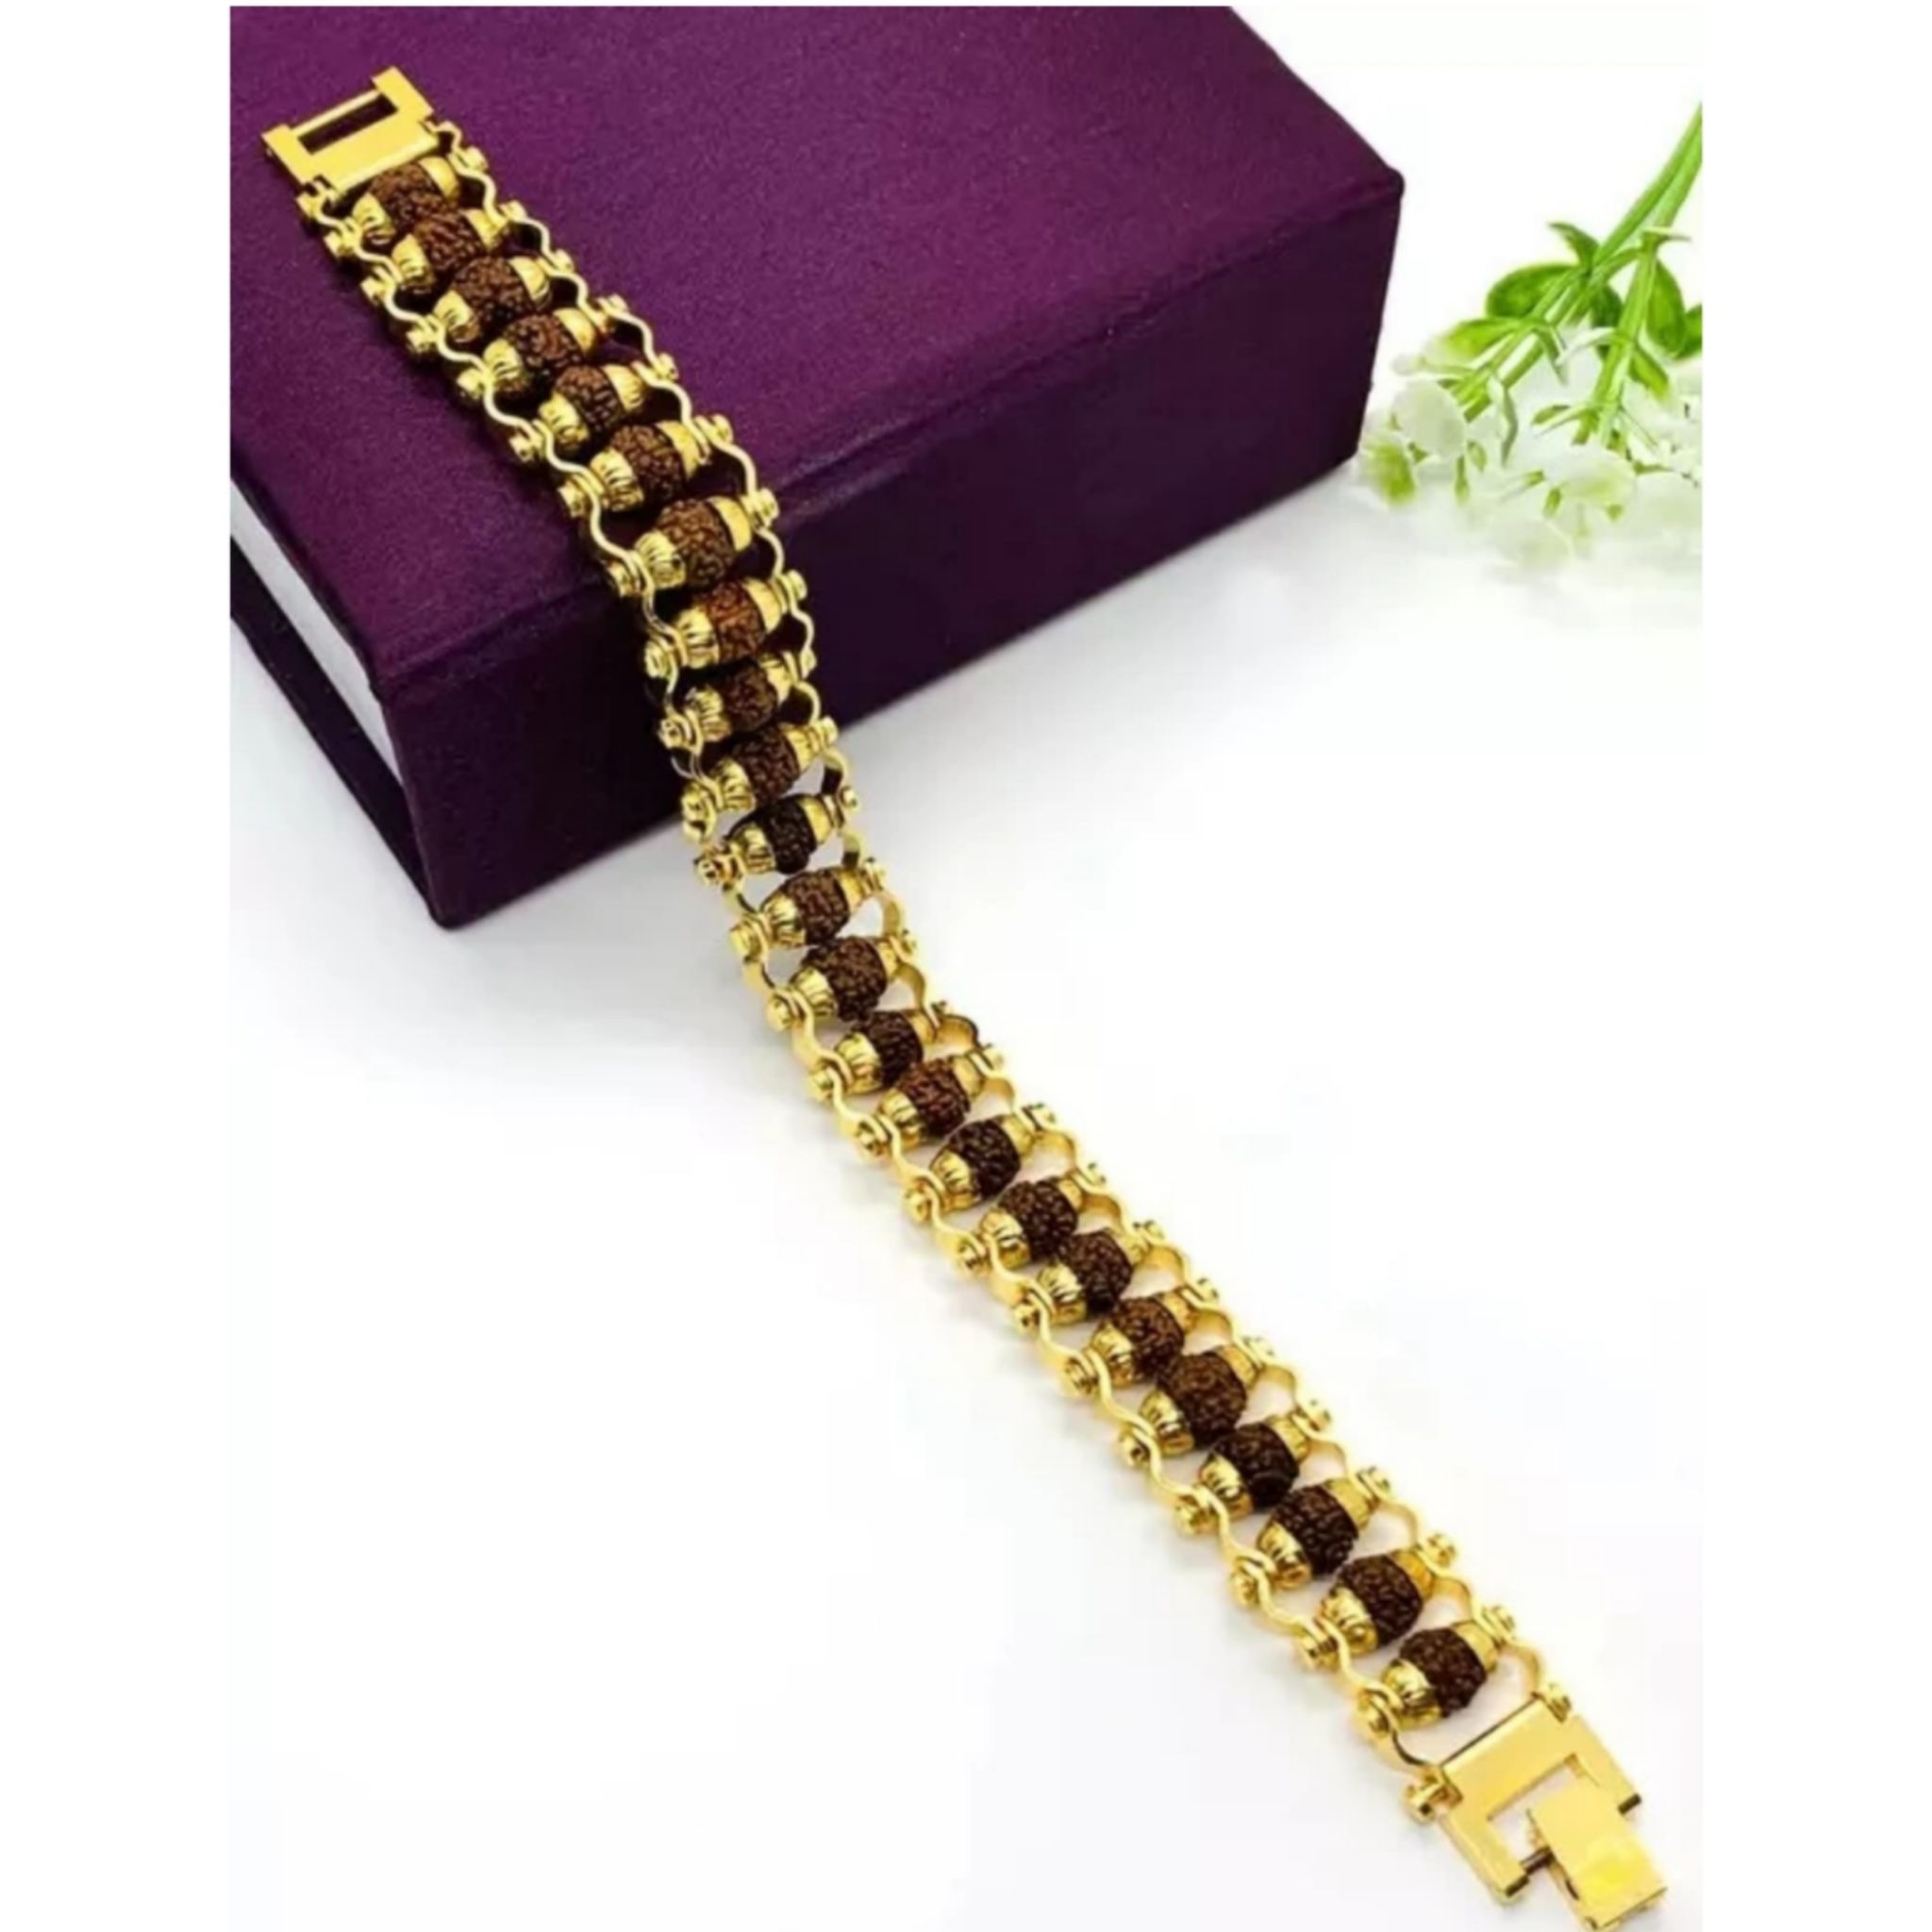 Evordlss Brass Rudraksh Gold Bracelet for 21 cm Men & Boys Golden Chain Length (Pack of 1)